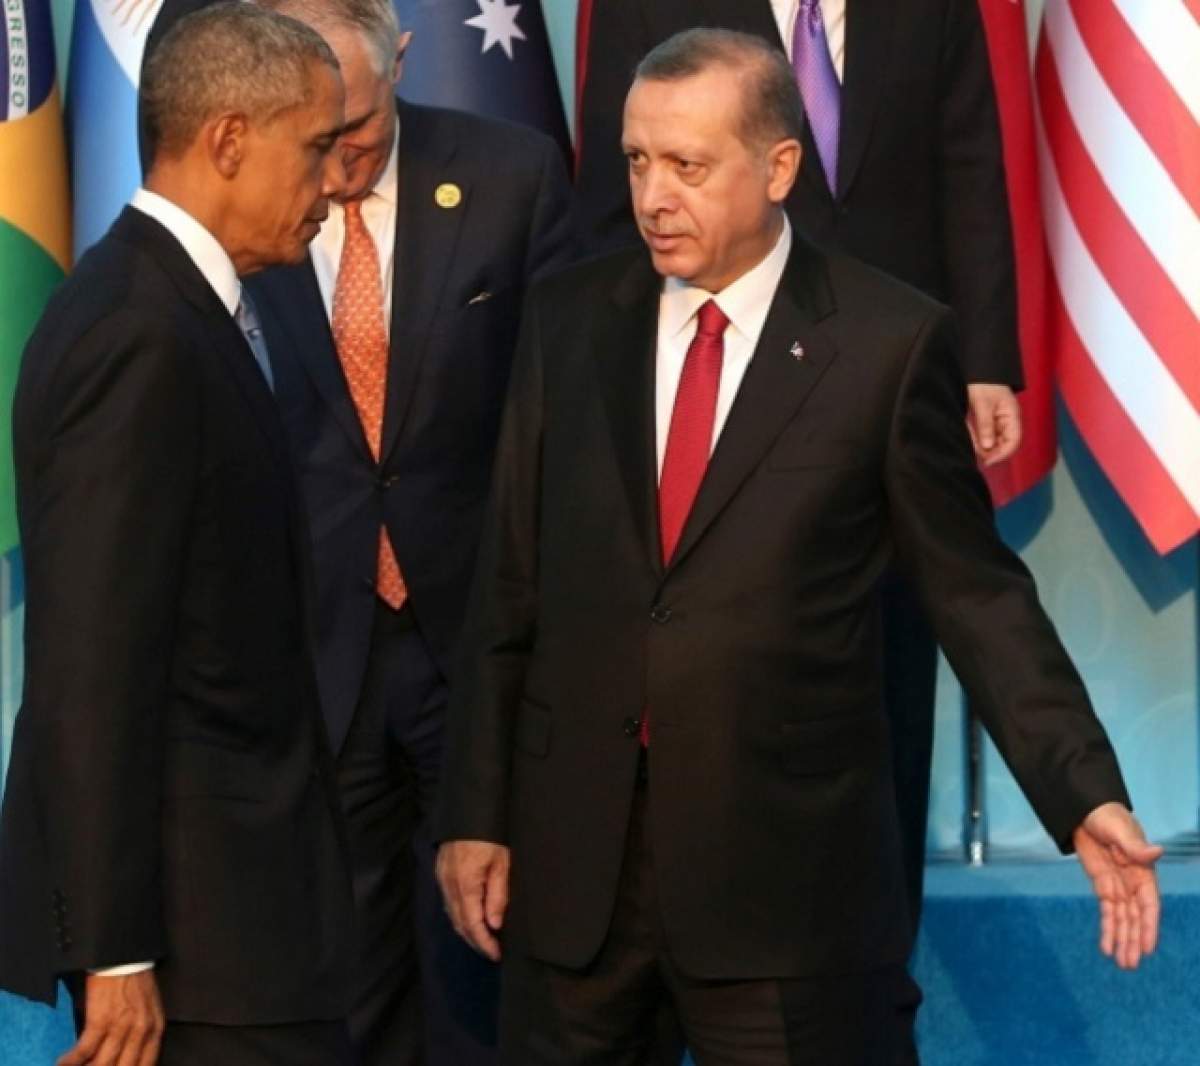 Stare de URGENŢĂ în Turcia! Erdogan stârneşte PANICĂ în LUME: "Suntem mai decisi sa cooperam cu Iranul şi Rusia"